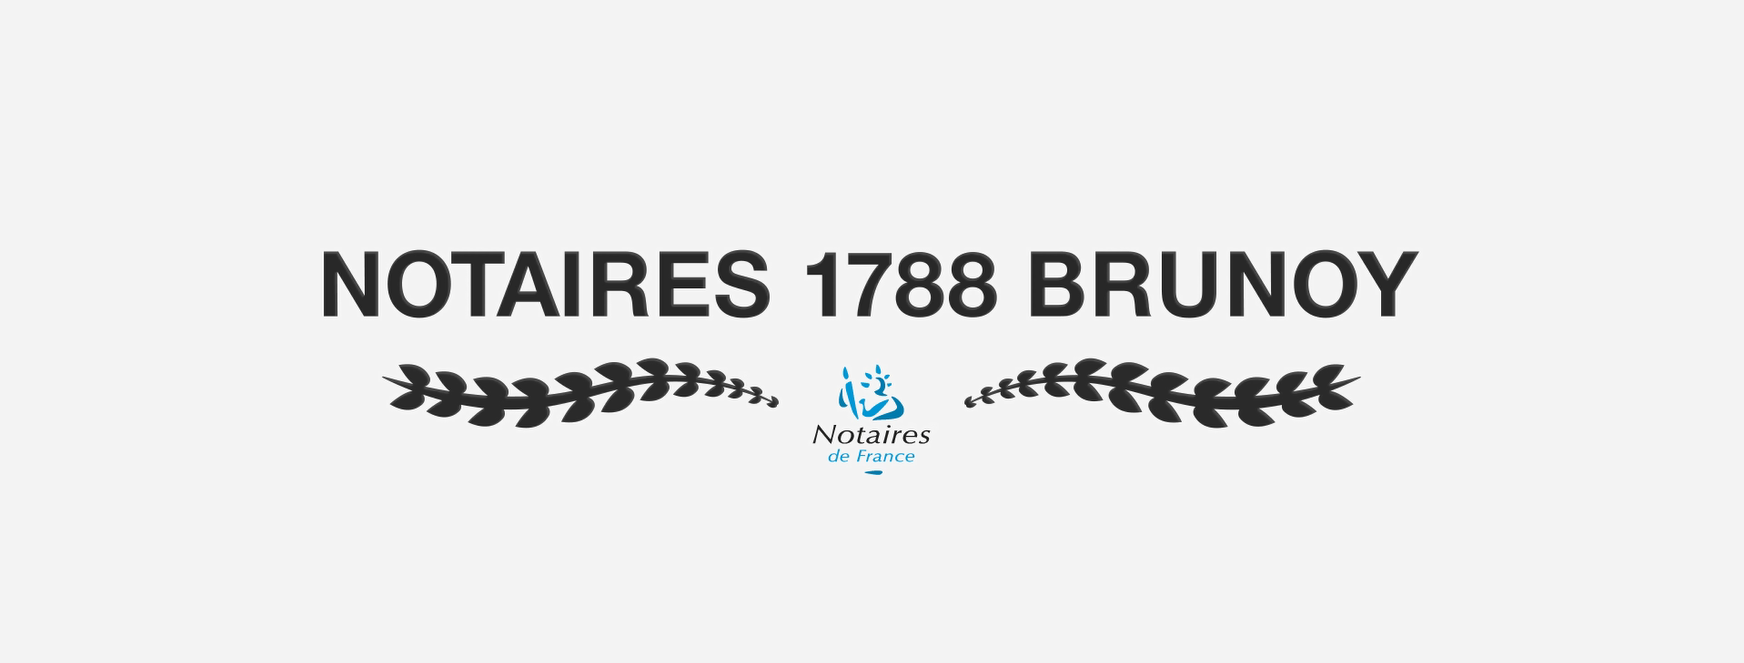 Notaires 1788 Brunoy